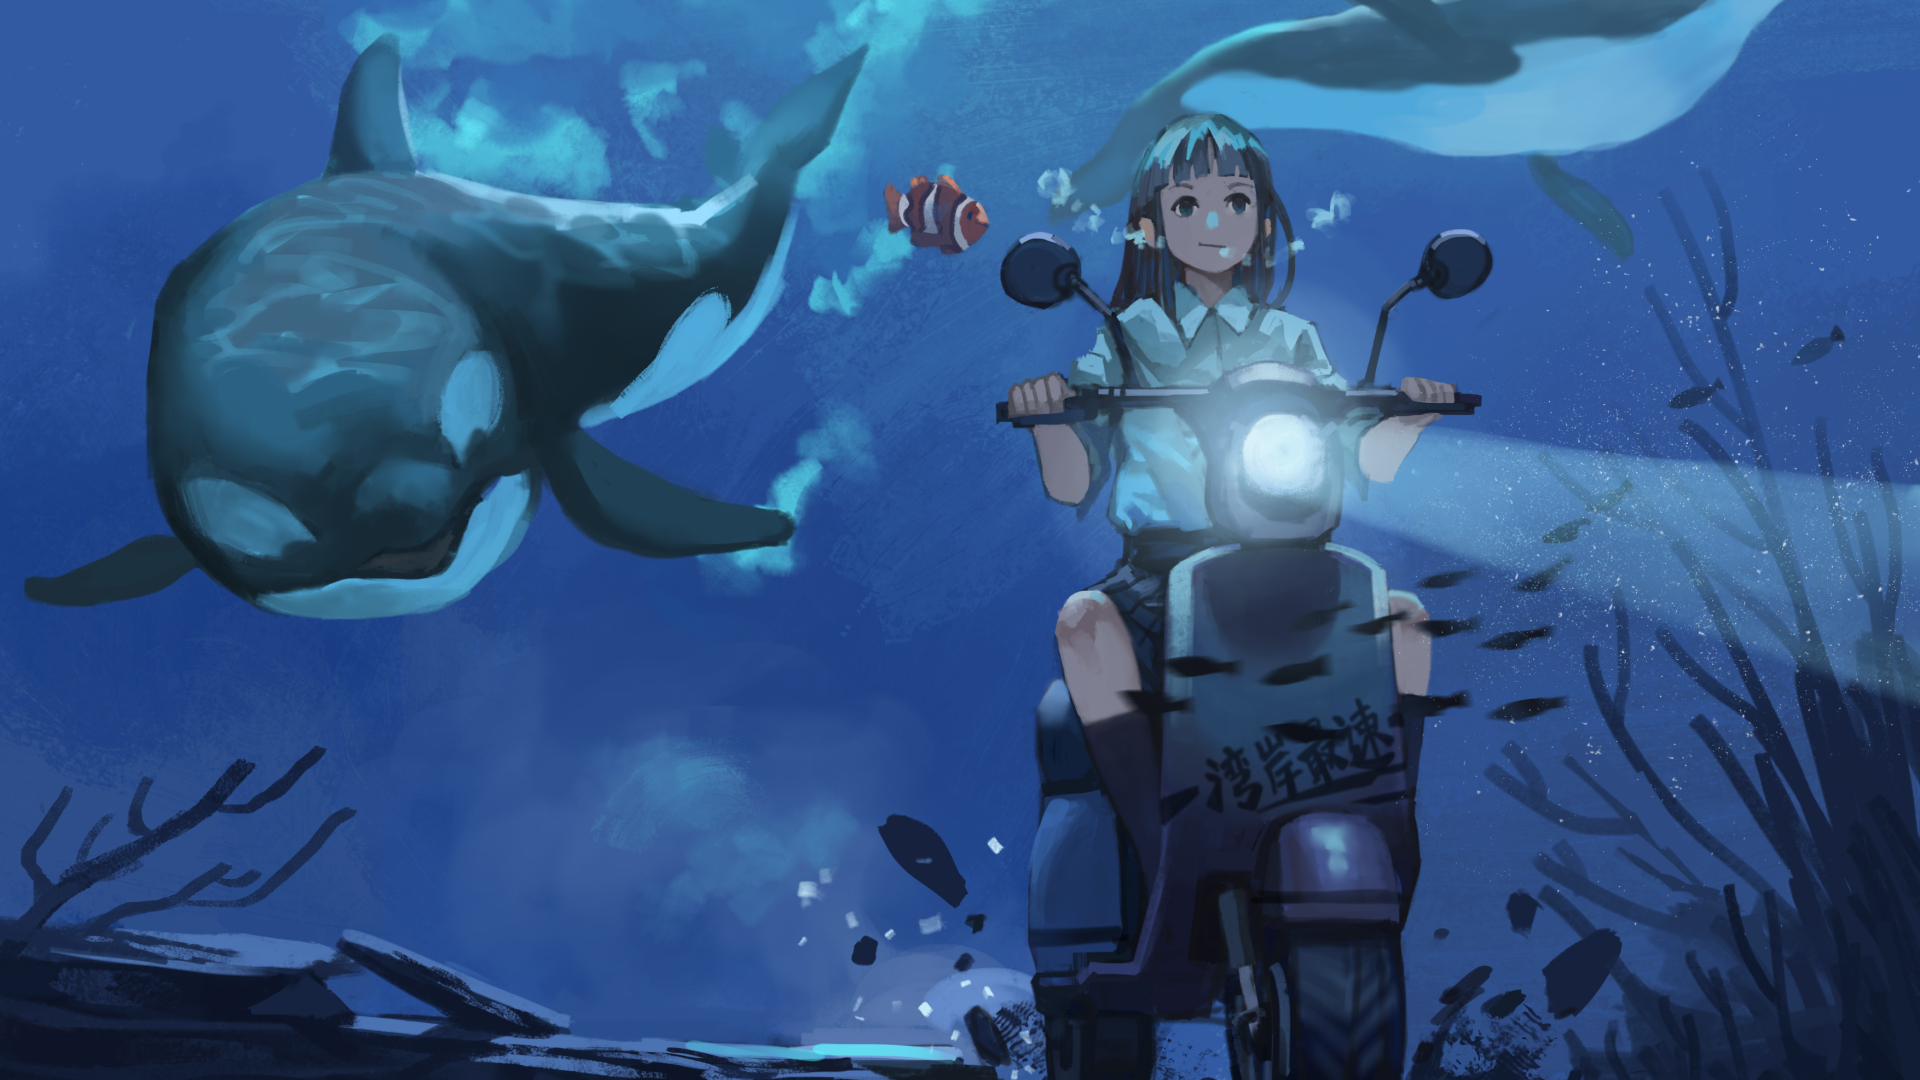 anime girl riding bike under water bGhmZmaUmZqaraWkpJRmbmdlrWZlbWU